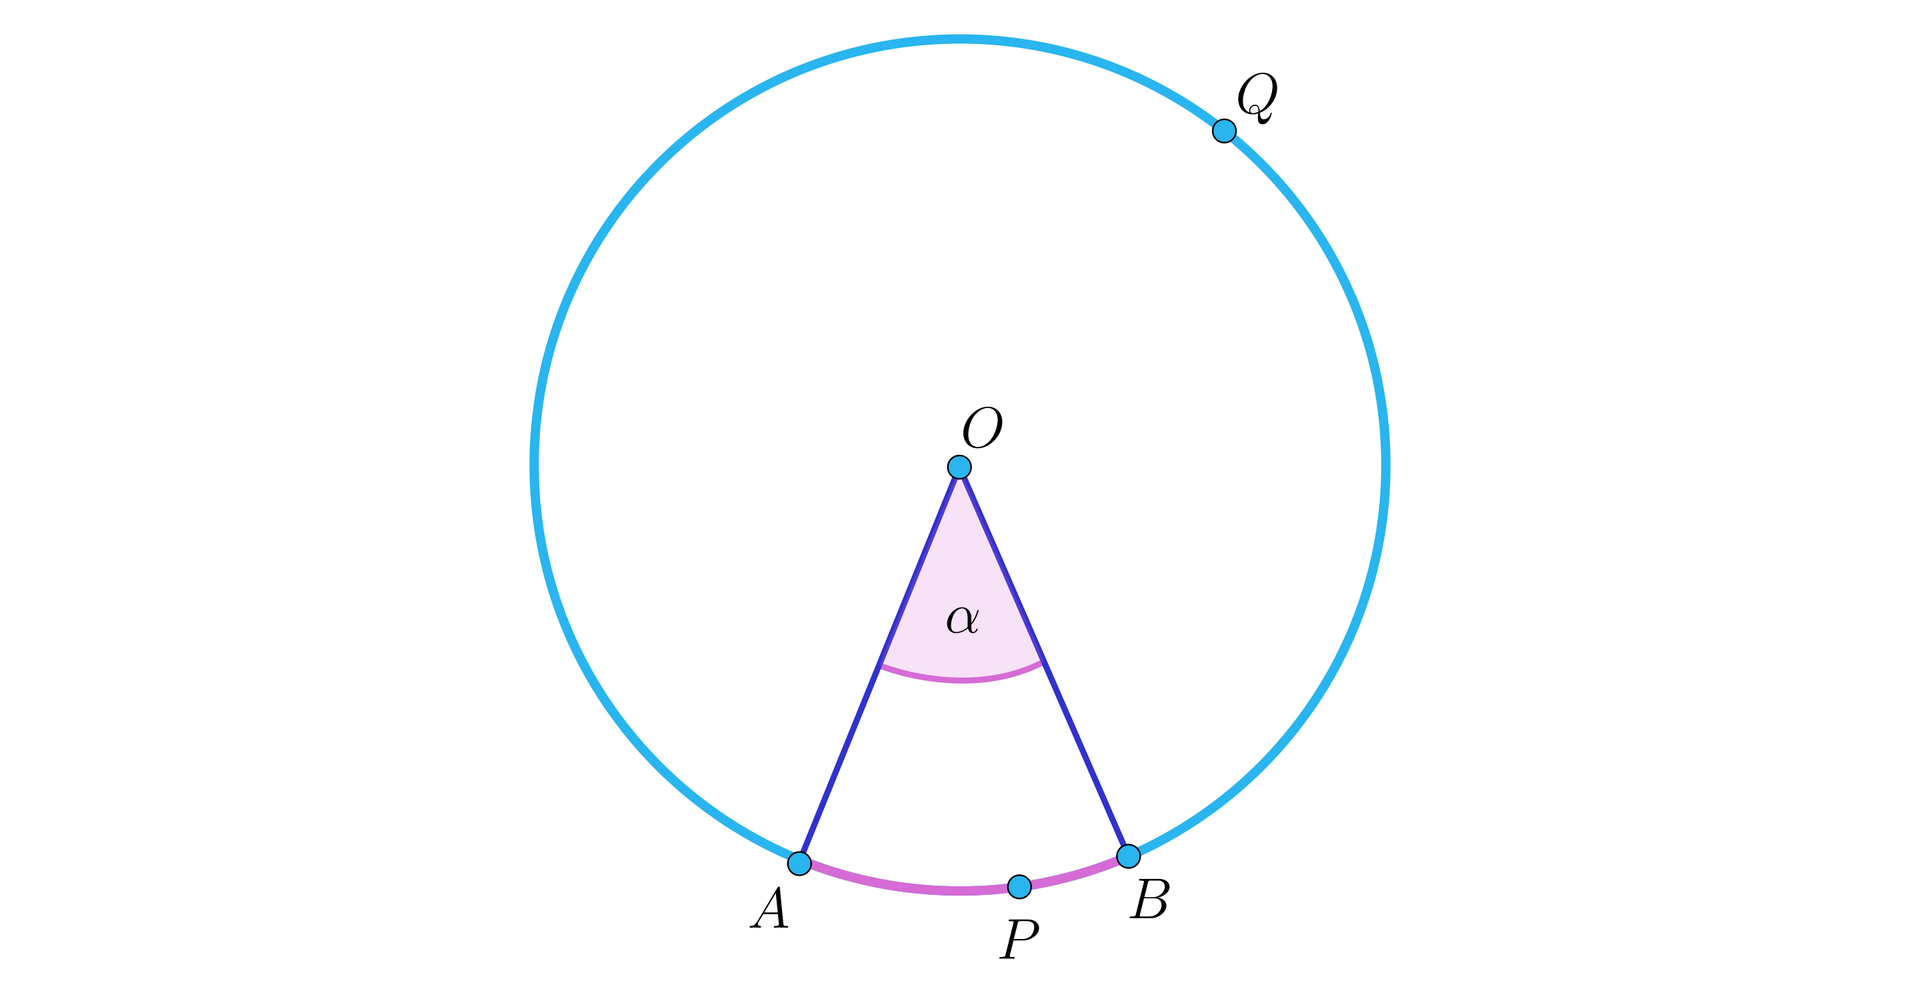 Rysunek przedstawia okrąg o środku w punkcie O. Dwa promienie tego okręgu, to jest OA oraz  OB, wyznaczają kąt ostry α. Punkty te dzielą okrąg na dwa łuki. Na rysunku wyróżniono krótszy łuk  AB. Na tym łuku zaznaczono punkt P, a poza nim zaznaczono na okręgu punkt Q. Ułatwia to orientację związaną z położeniem łuku, o który nam chodzi. Teraz, mając trzy punkty odniesienia, łatwo bowiem rozróżnić, o który łuk chodzi.  Mamy więc na rysunku krótszy łuk APB oraz dłuższy łuk AQB.